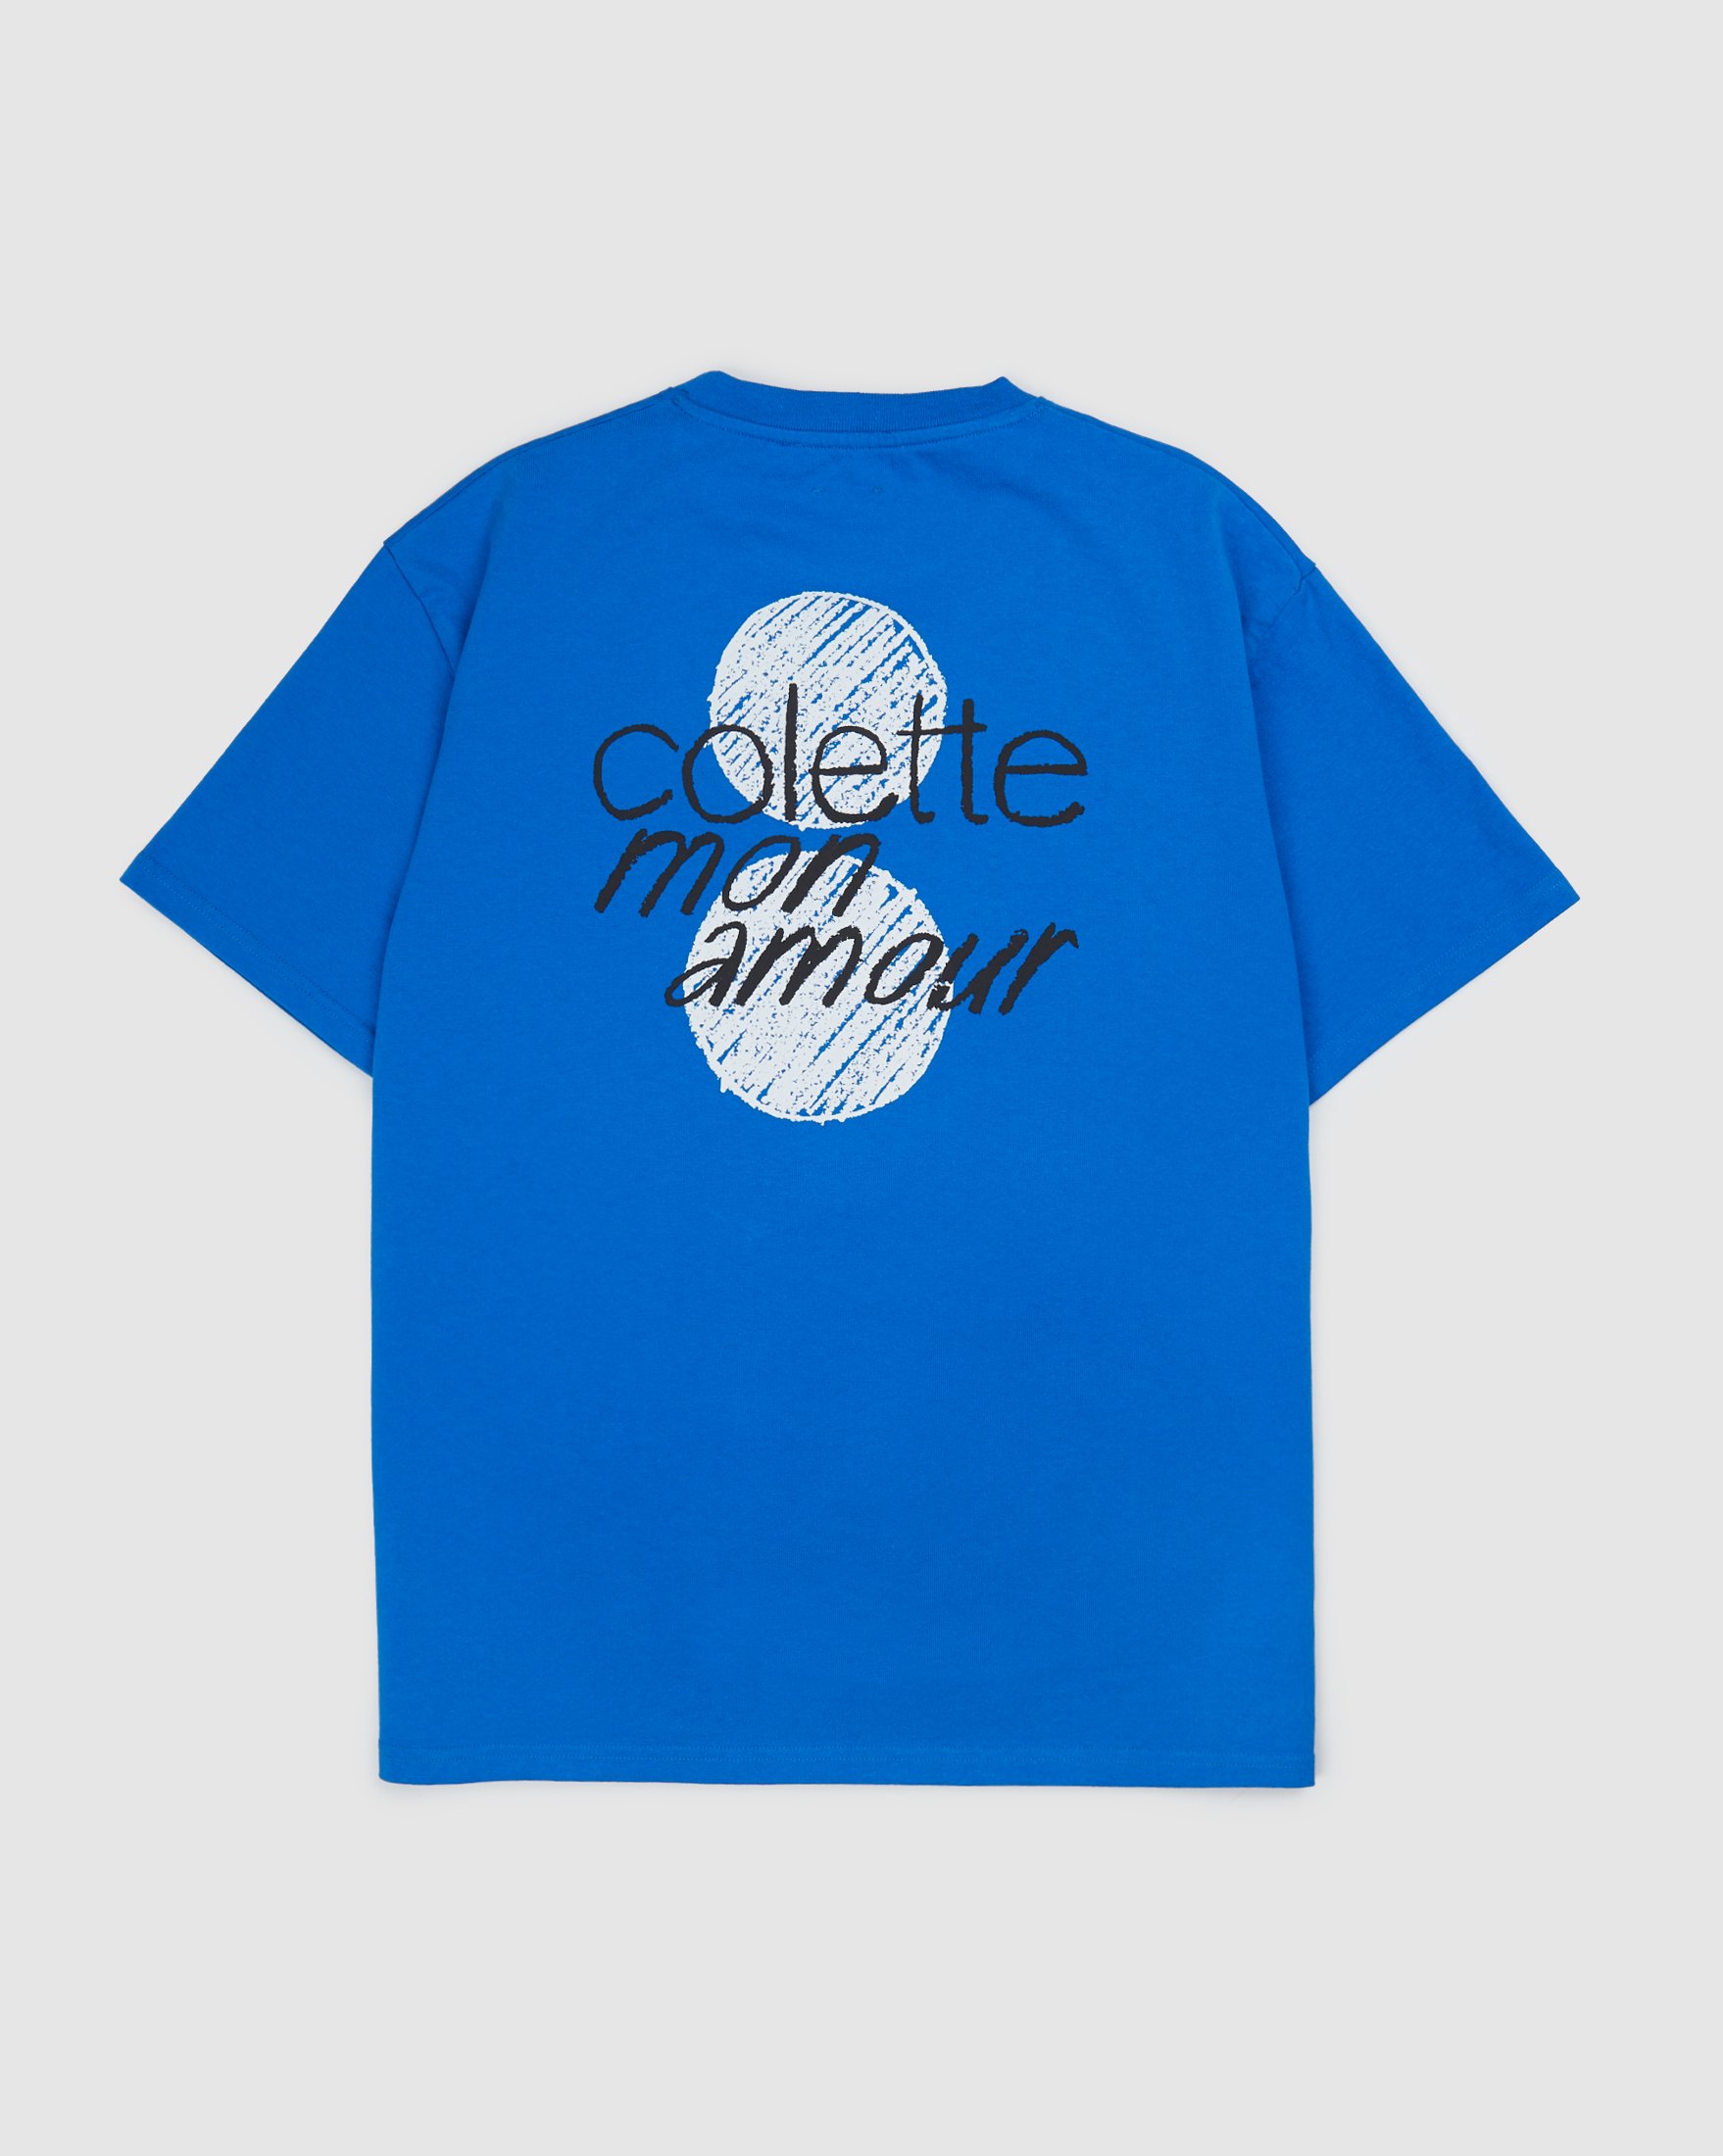 Colette Mon Amour - HS Dots T-Shirt Blue - Clothing - Blue - Image 1